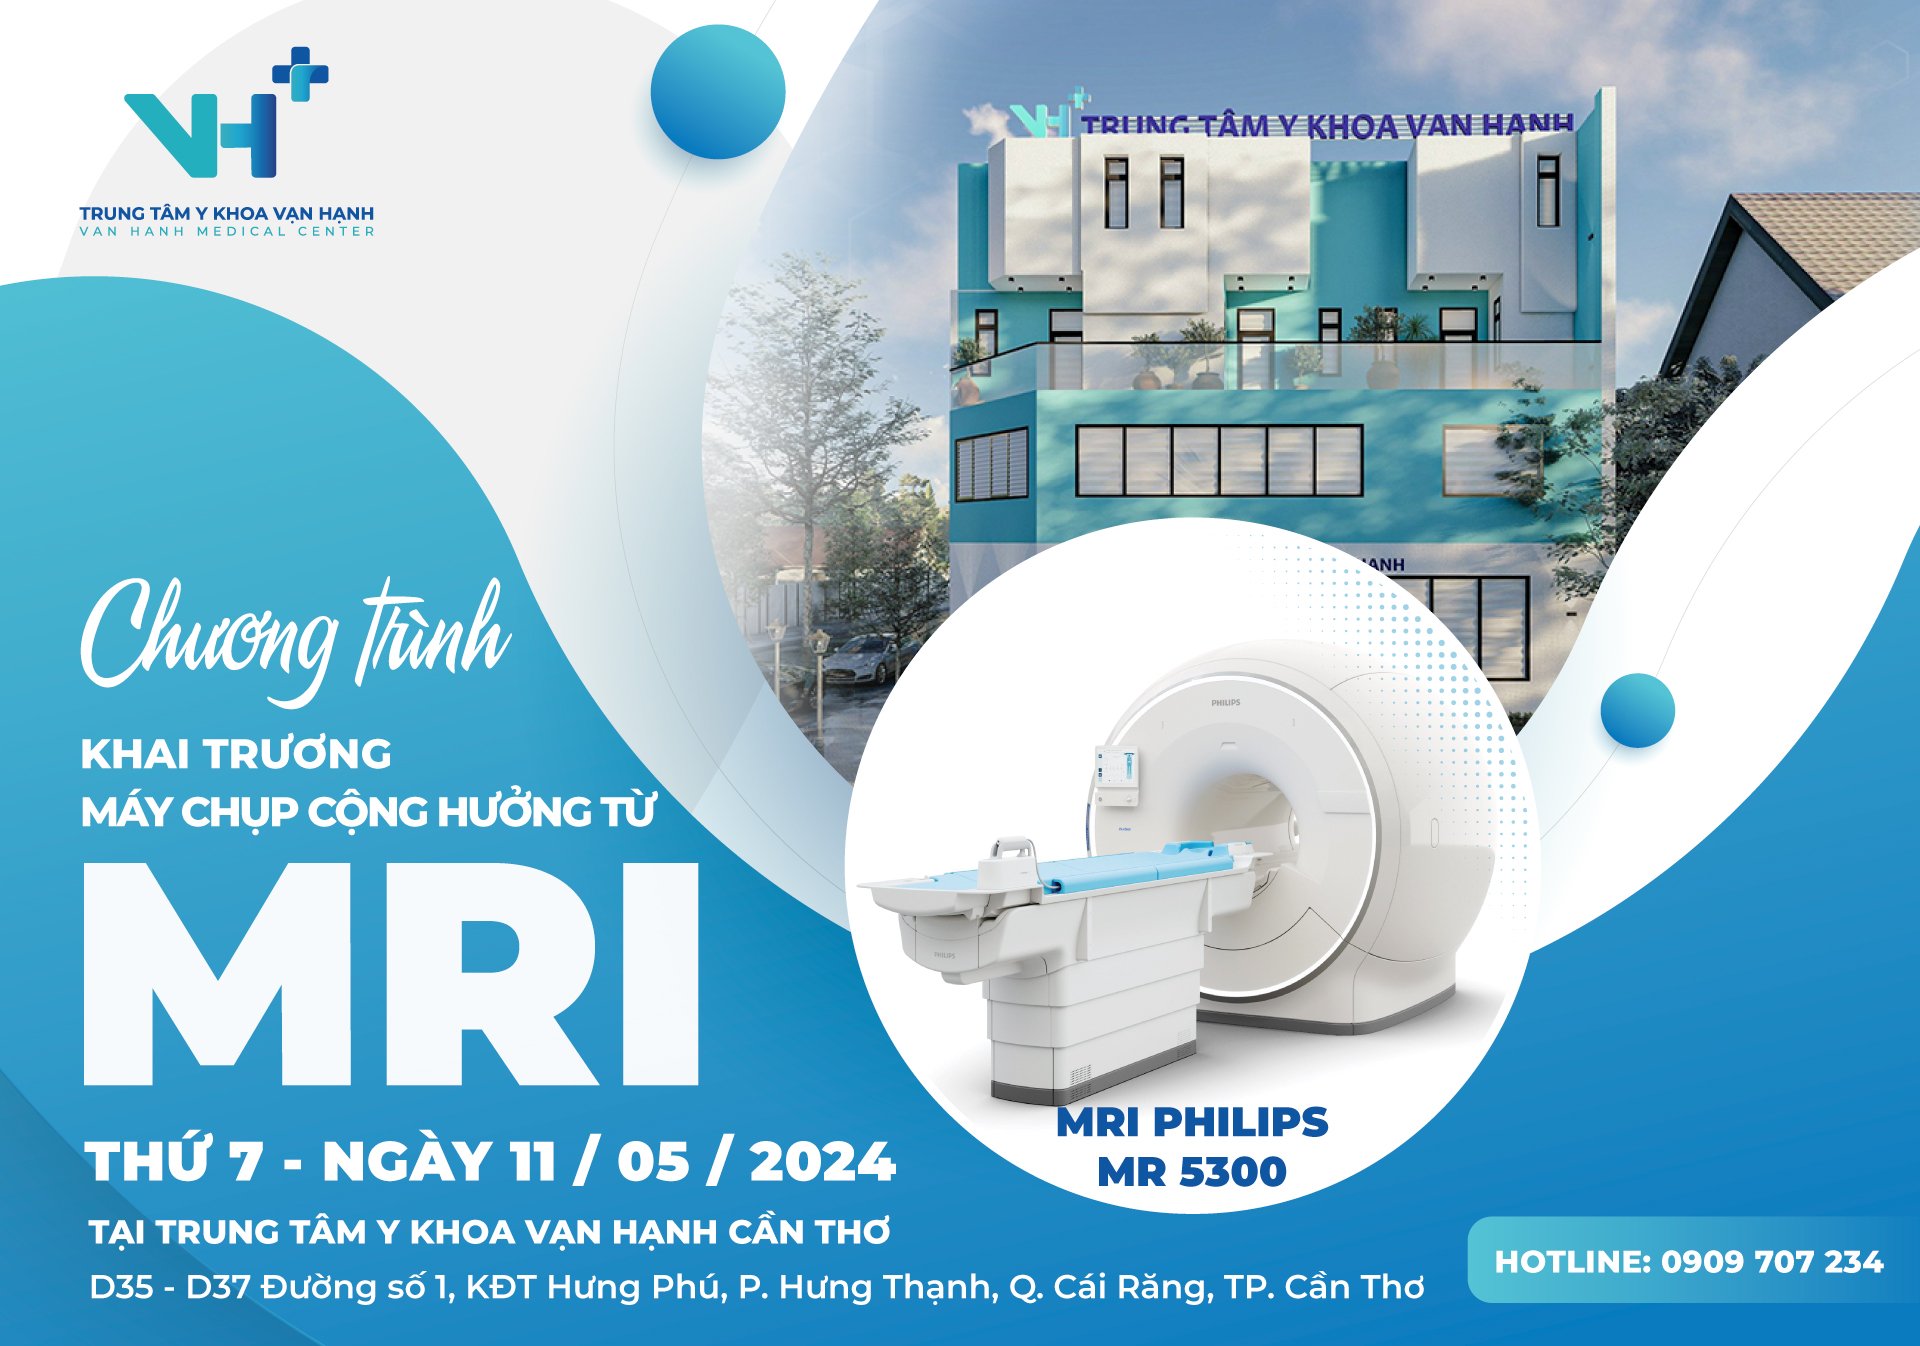 Chương trình khai trương hệ thống máy chụp cộng hưởng từ (MRI) Philips MR 5300 tại TTYK Vạn Hạnh Cần Thơ